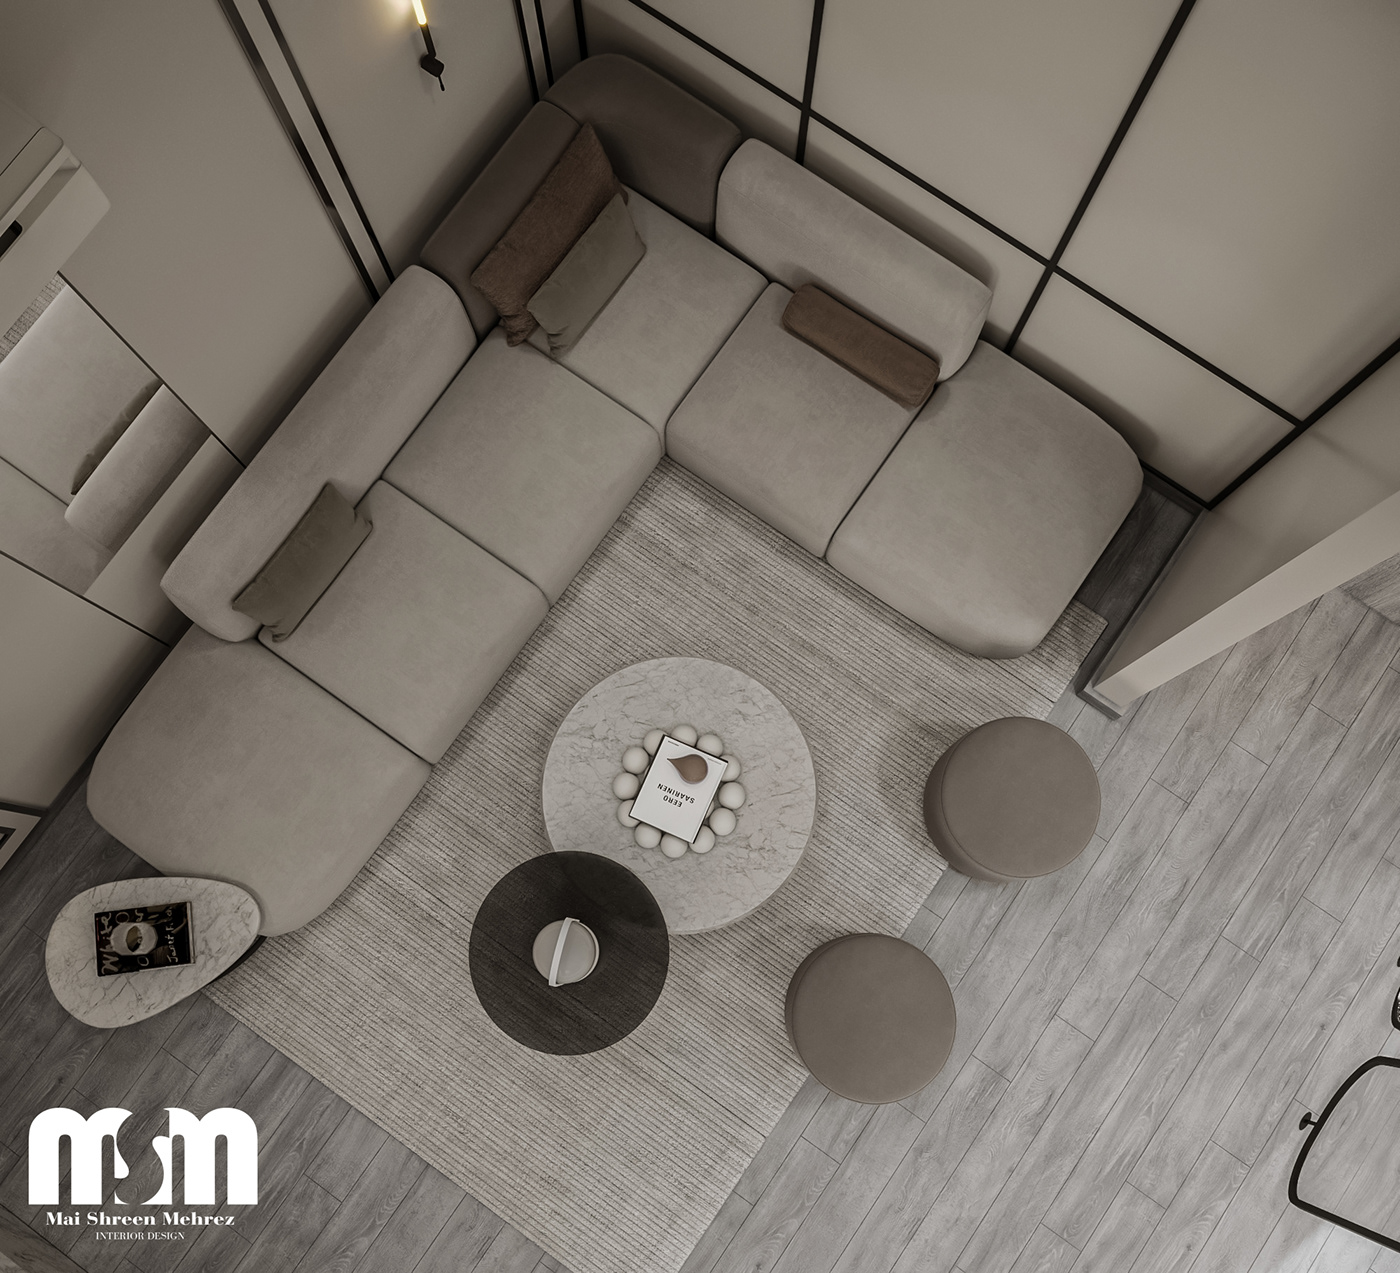 3D CGI decor design Interior interior design  luxury Luxury Design architecture living room